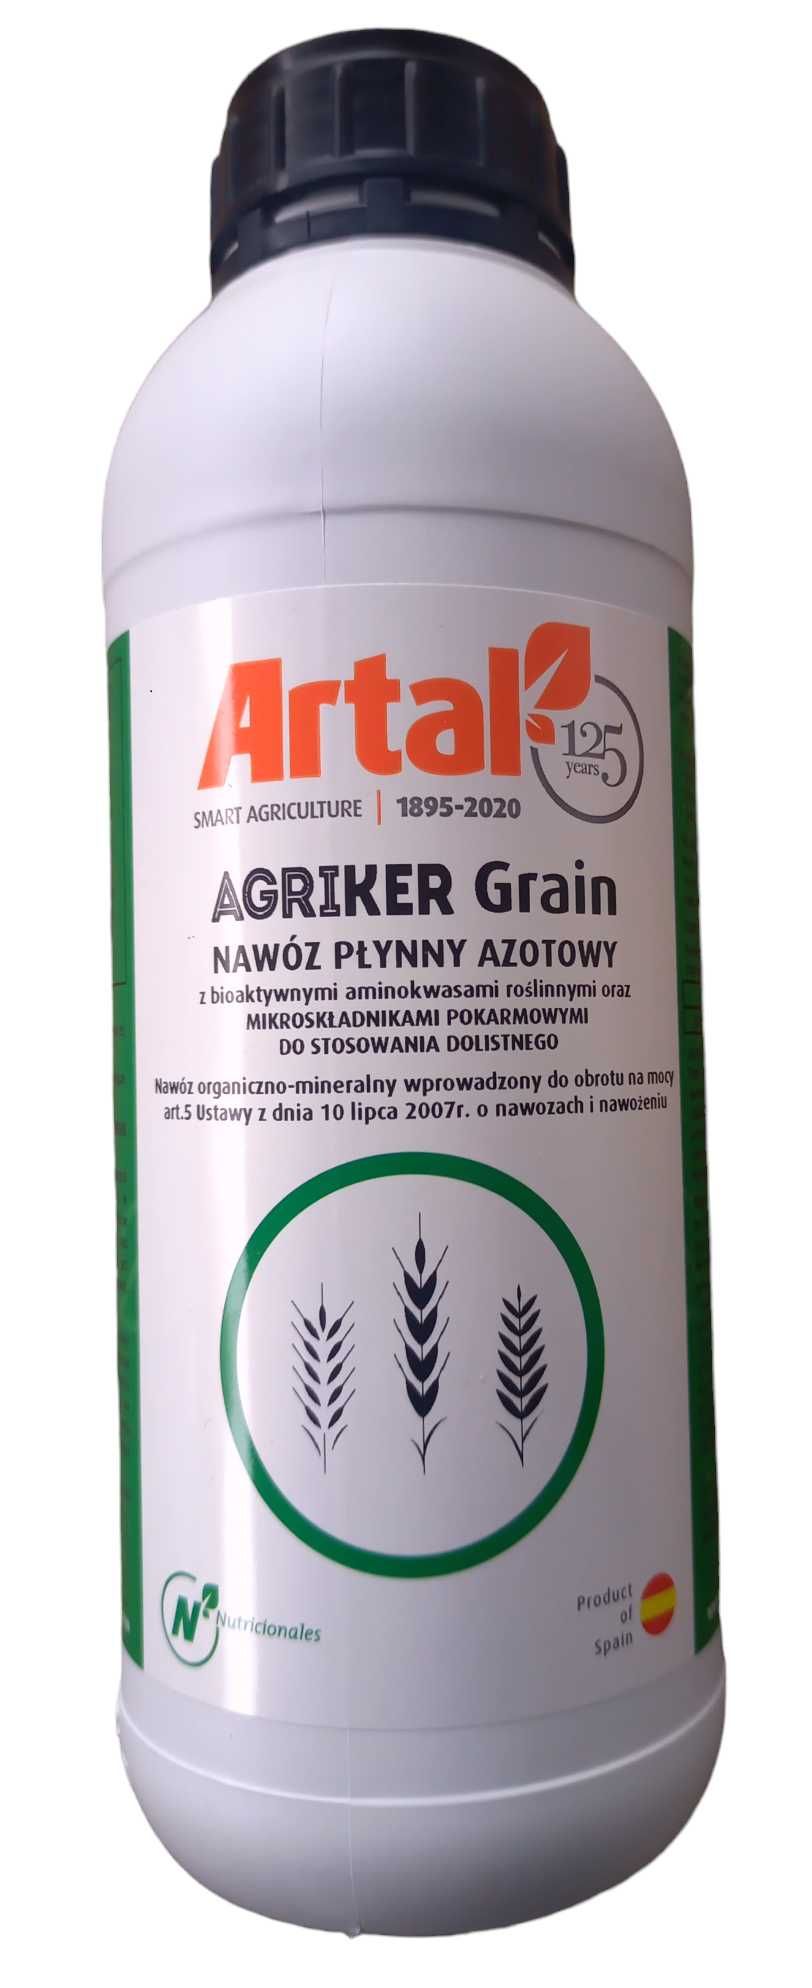 Agriker Grain najlepsze aminokwasy roślinne, op 5 Litrów na 5 hektarów